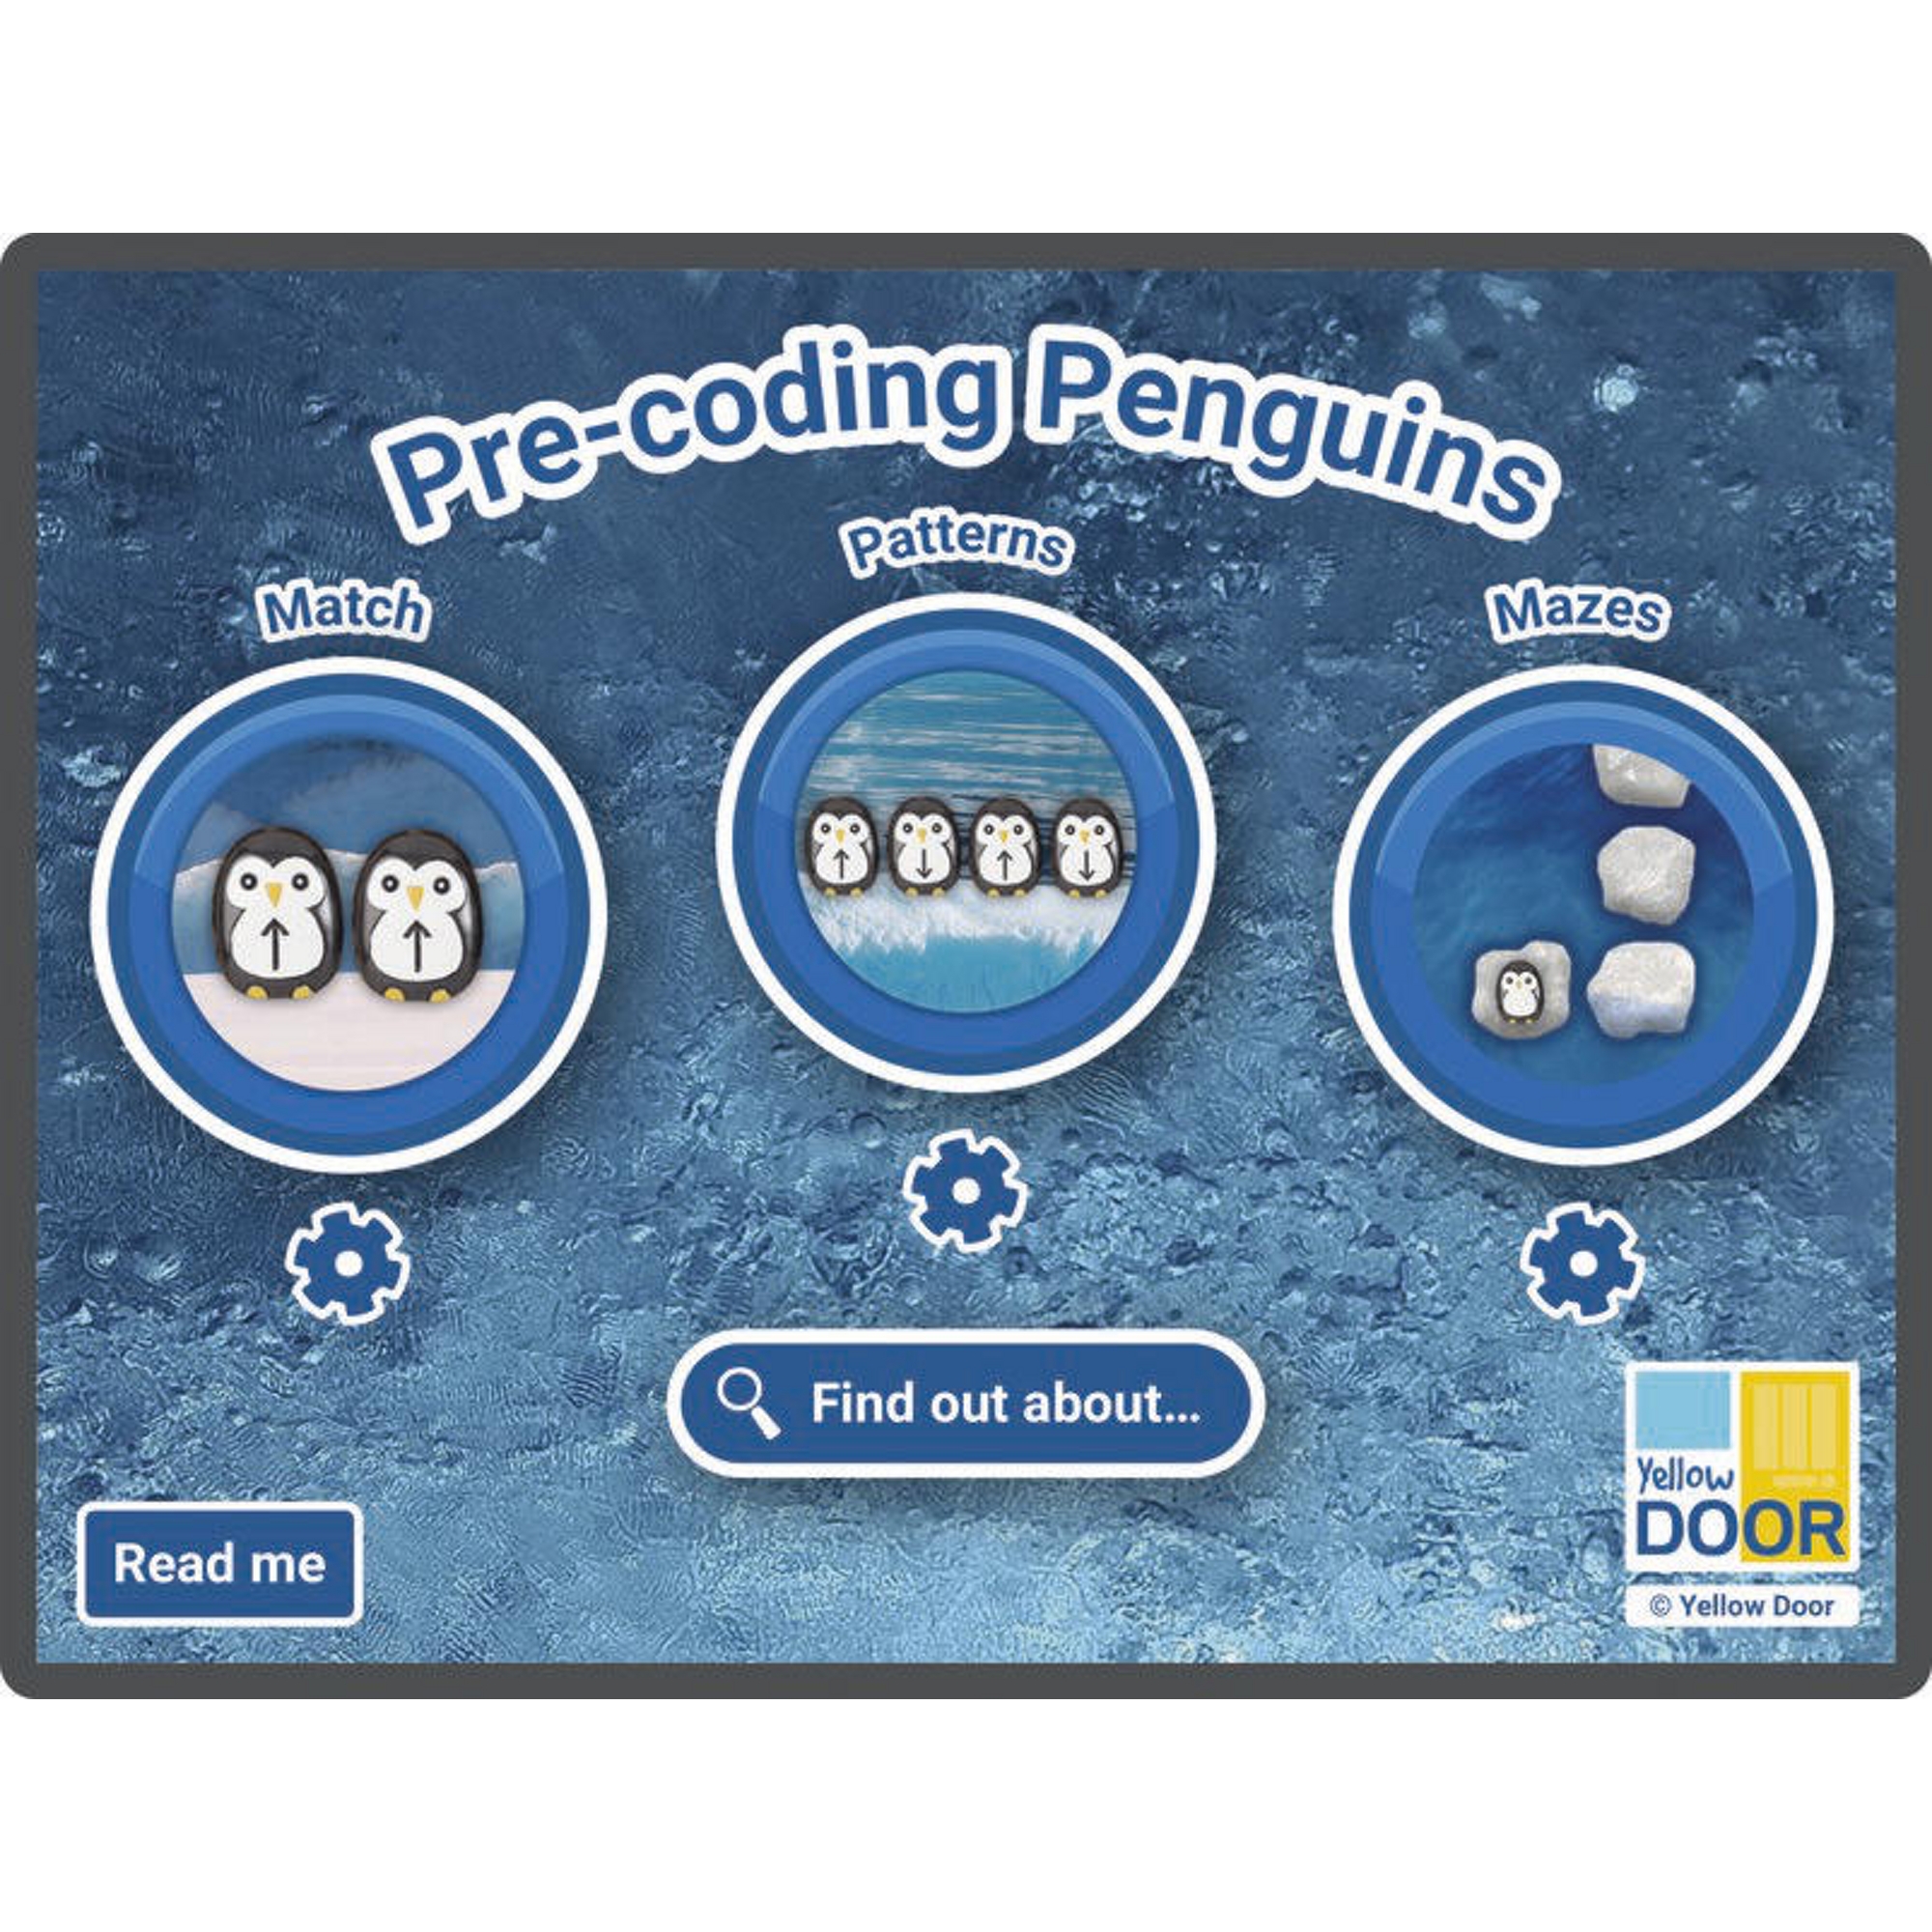 Pre-coding Penguins App (1 device)